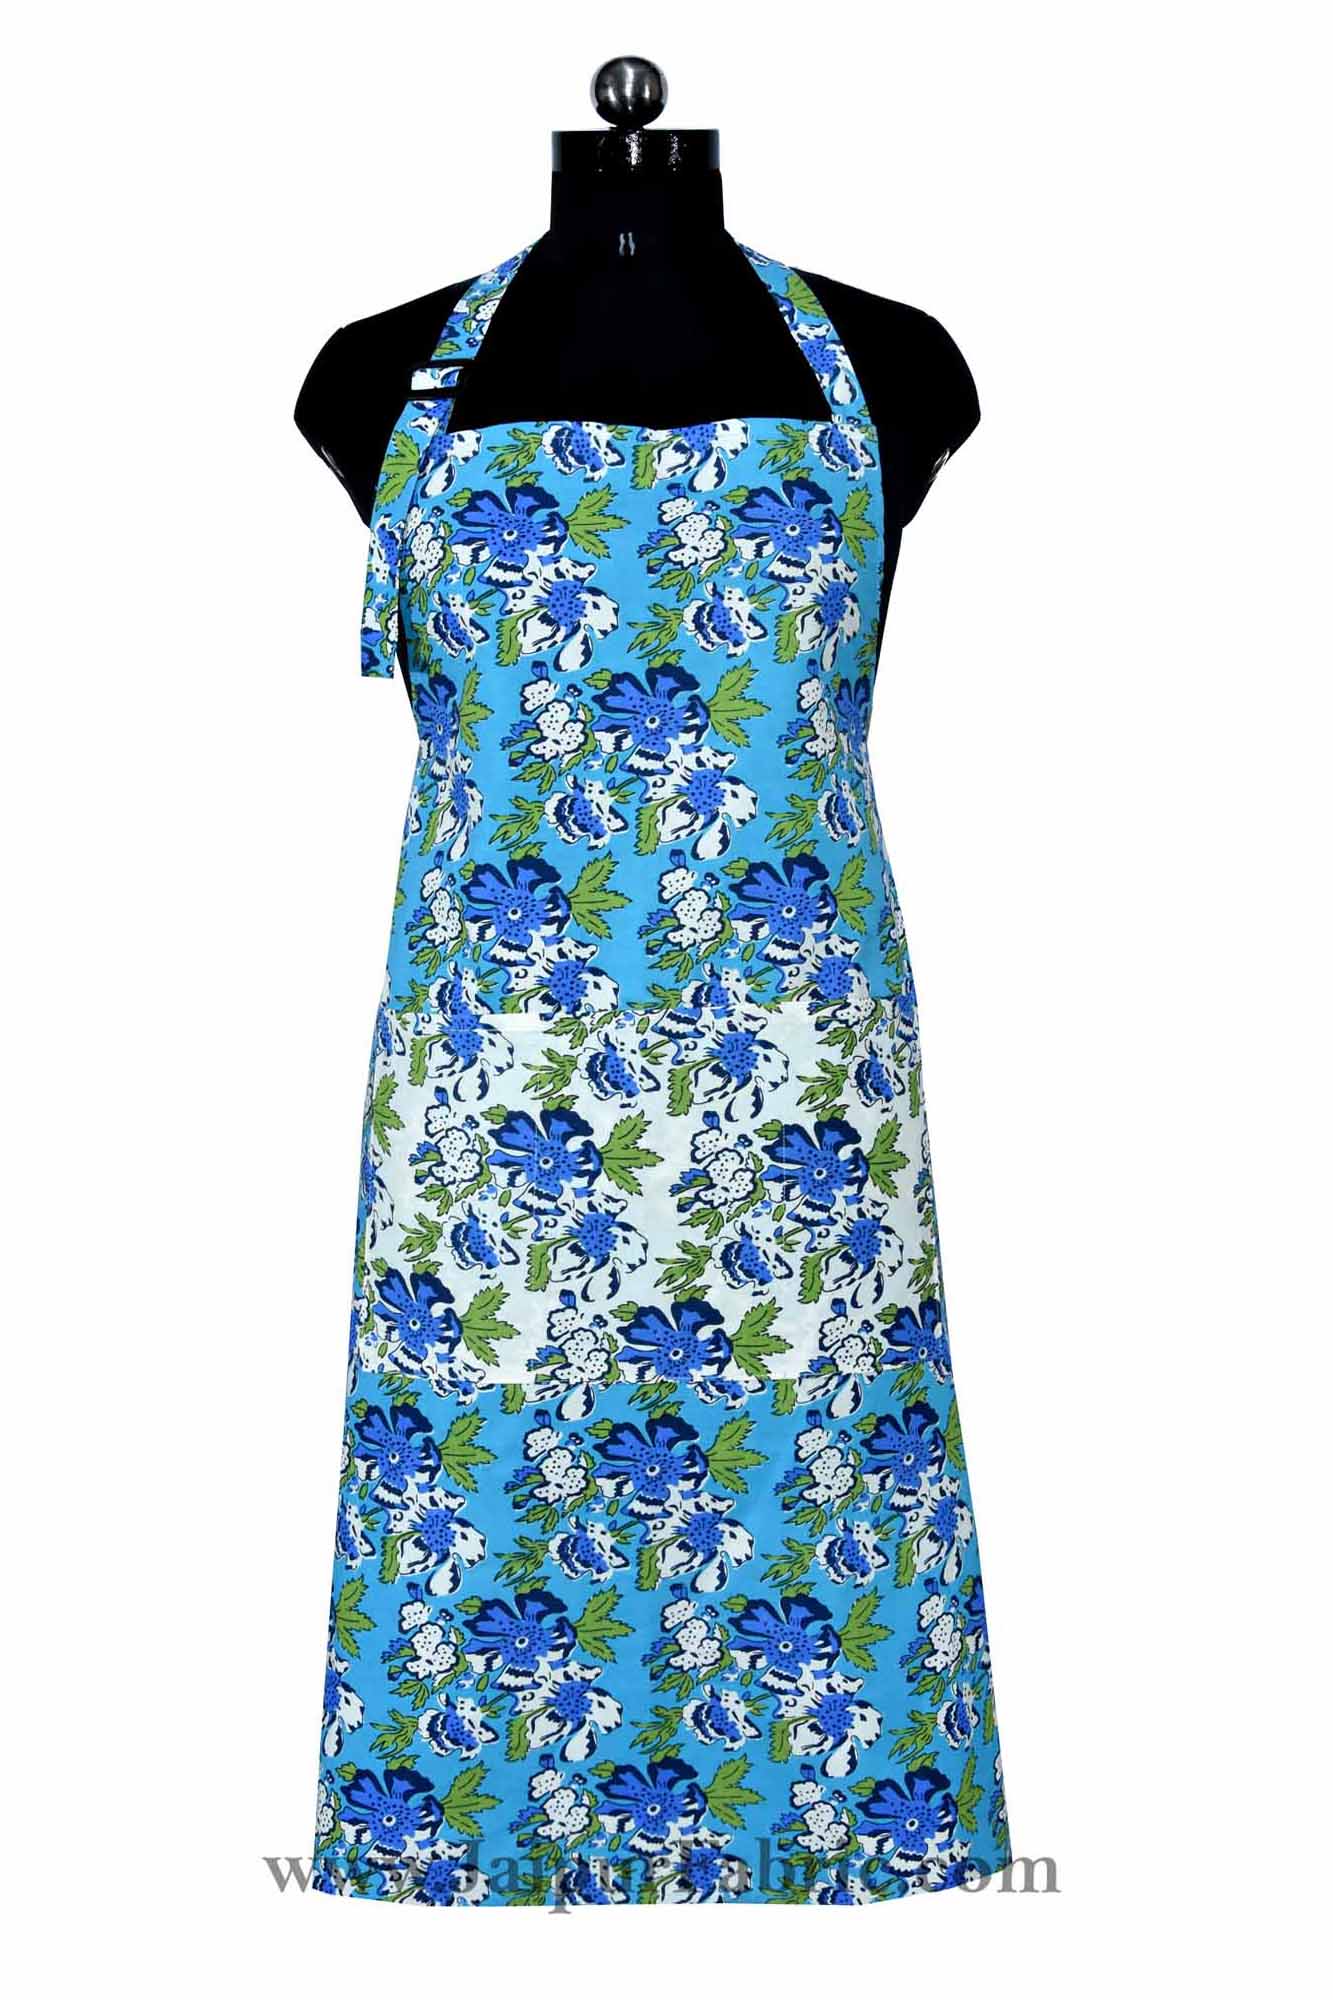 Floral garden turquoise blue apron